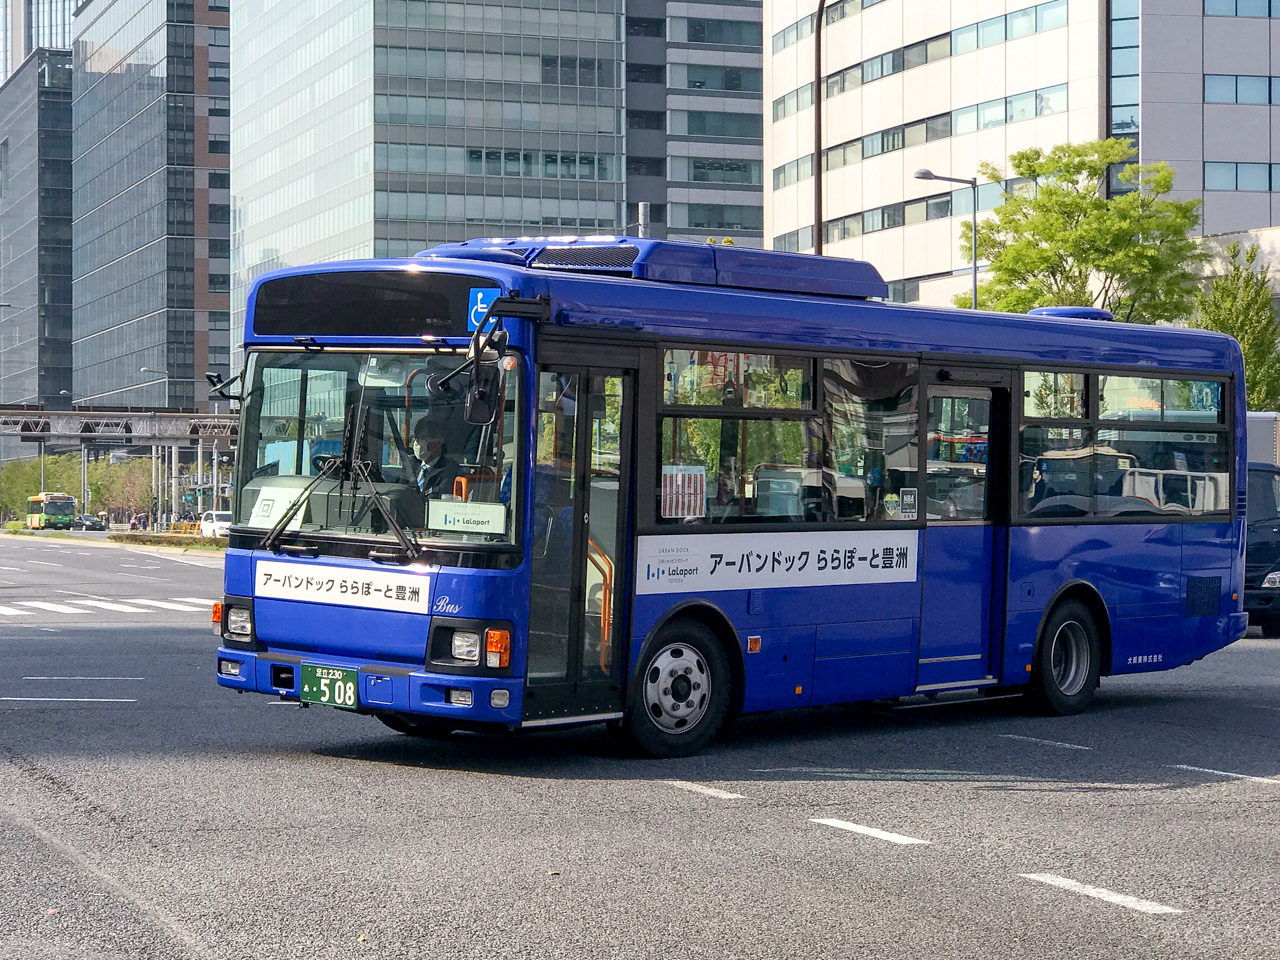 ららぽーと豊洲の無料シャトルバス、晴海・勝どき・月島・有明・東雲・辰巳からの買い物に便利なバスが水曜日に運行